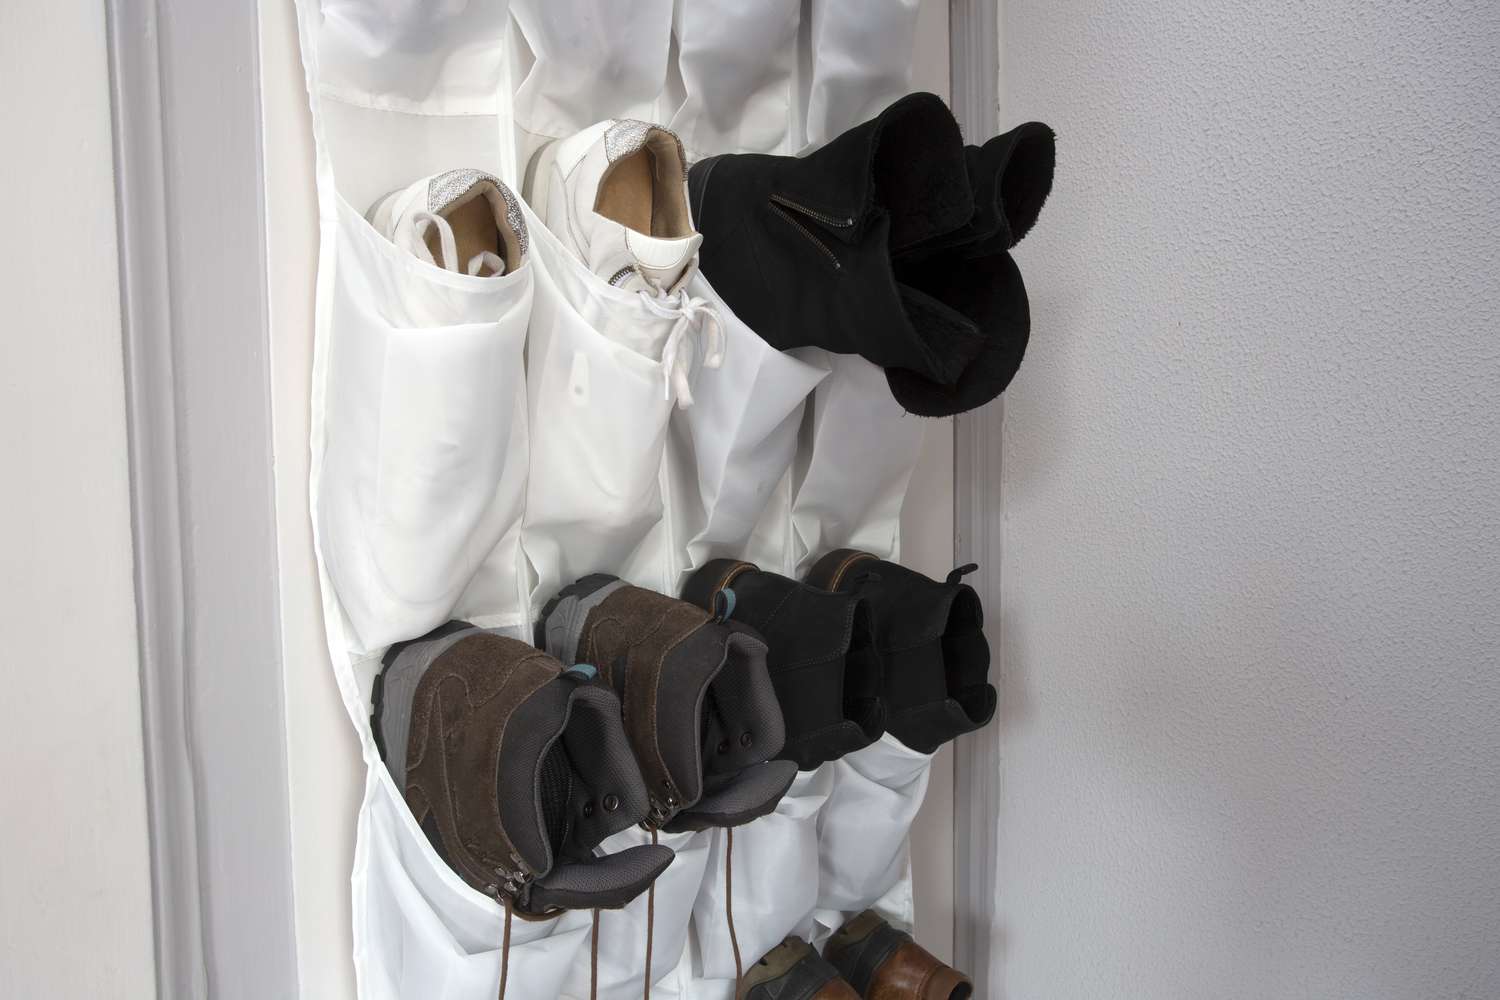 Schuhe in einem über der Tür angebrachten Regal